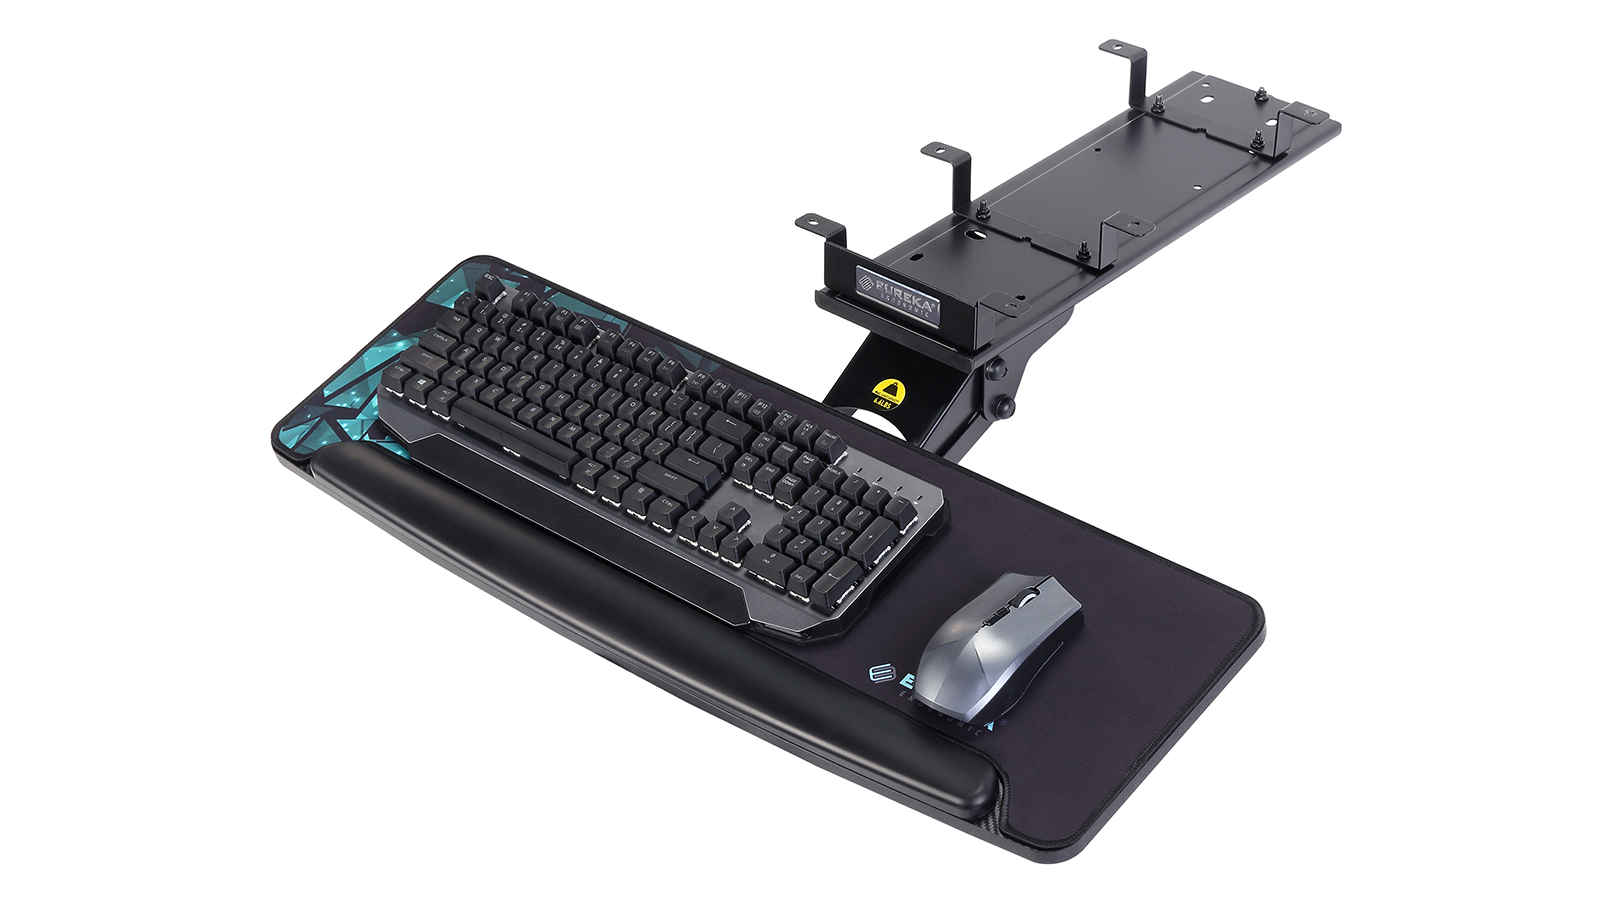 EUREKA ERGONOMIC Keyboard Tray and Mouse